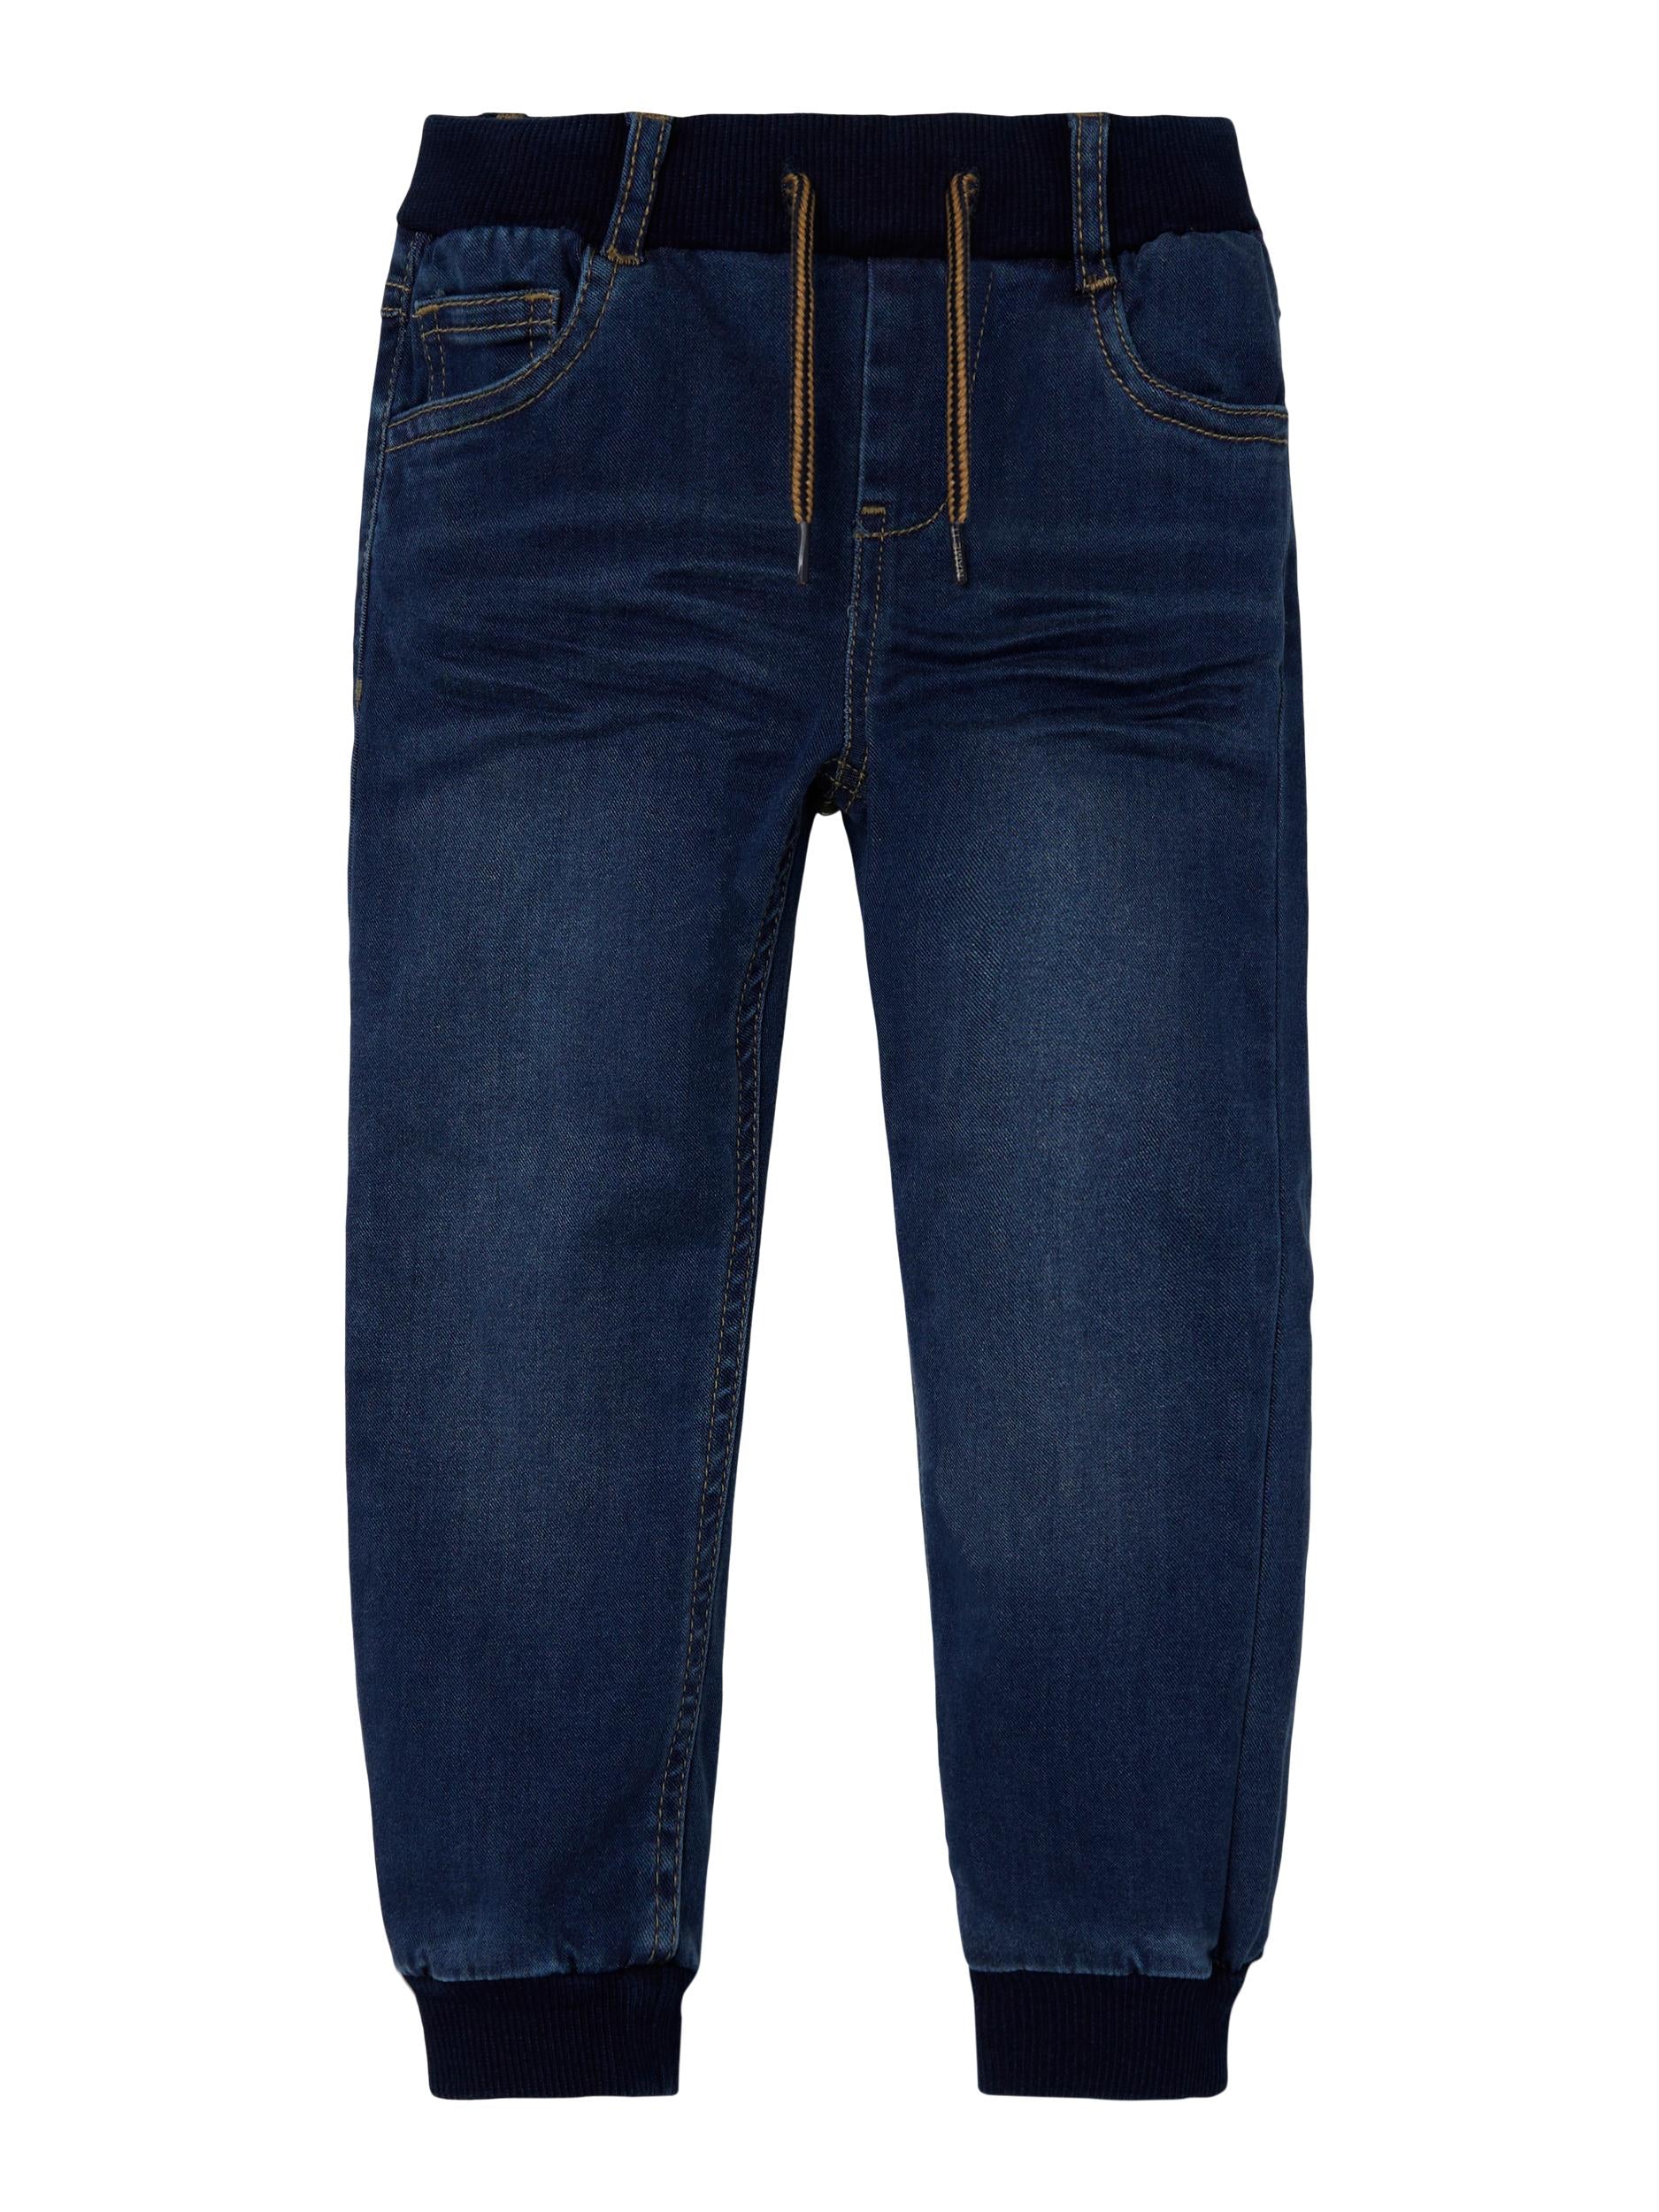 Boy's Ben Baggy Round Jeans 1132 - Dark Blue Denim-Front View